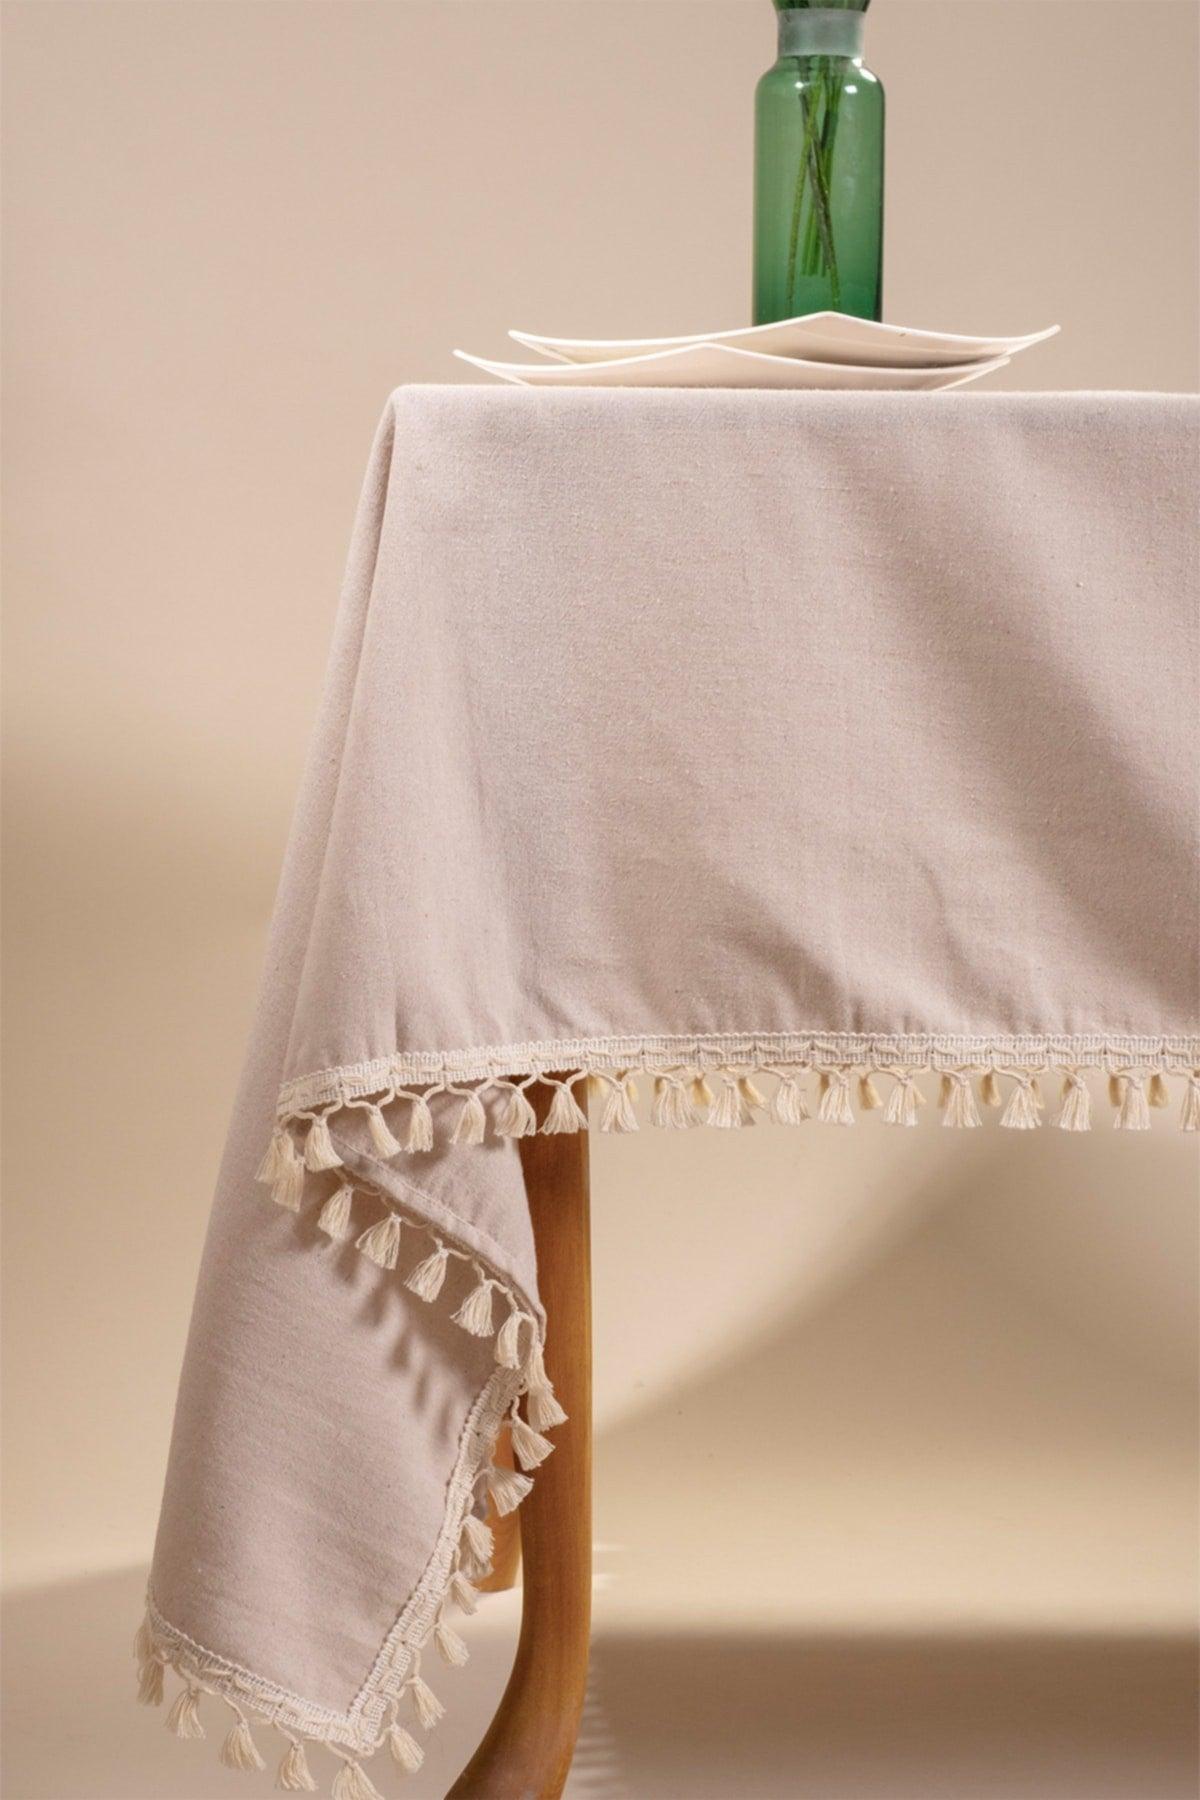 Beige Colored Cotton Pompom Tablecloth - Swordslife